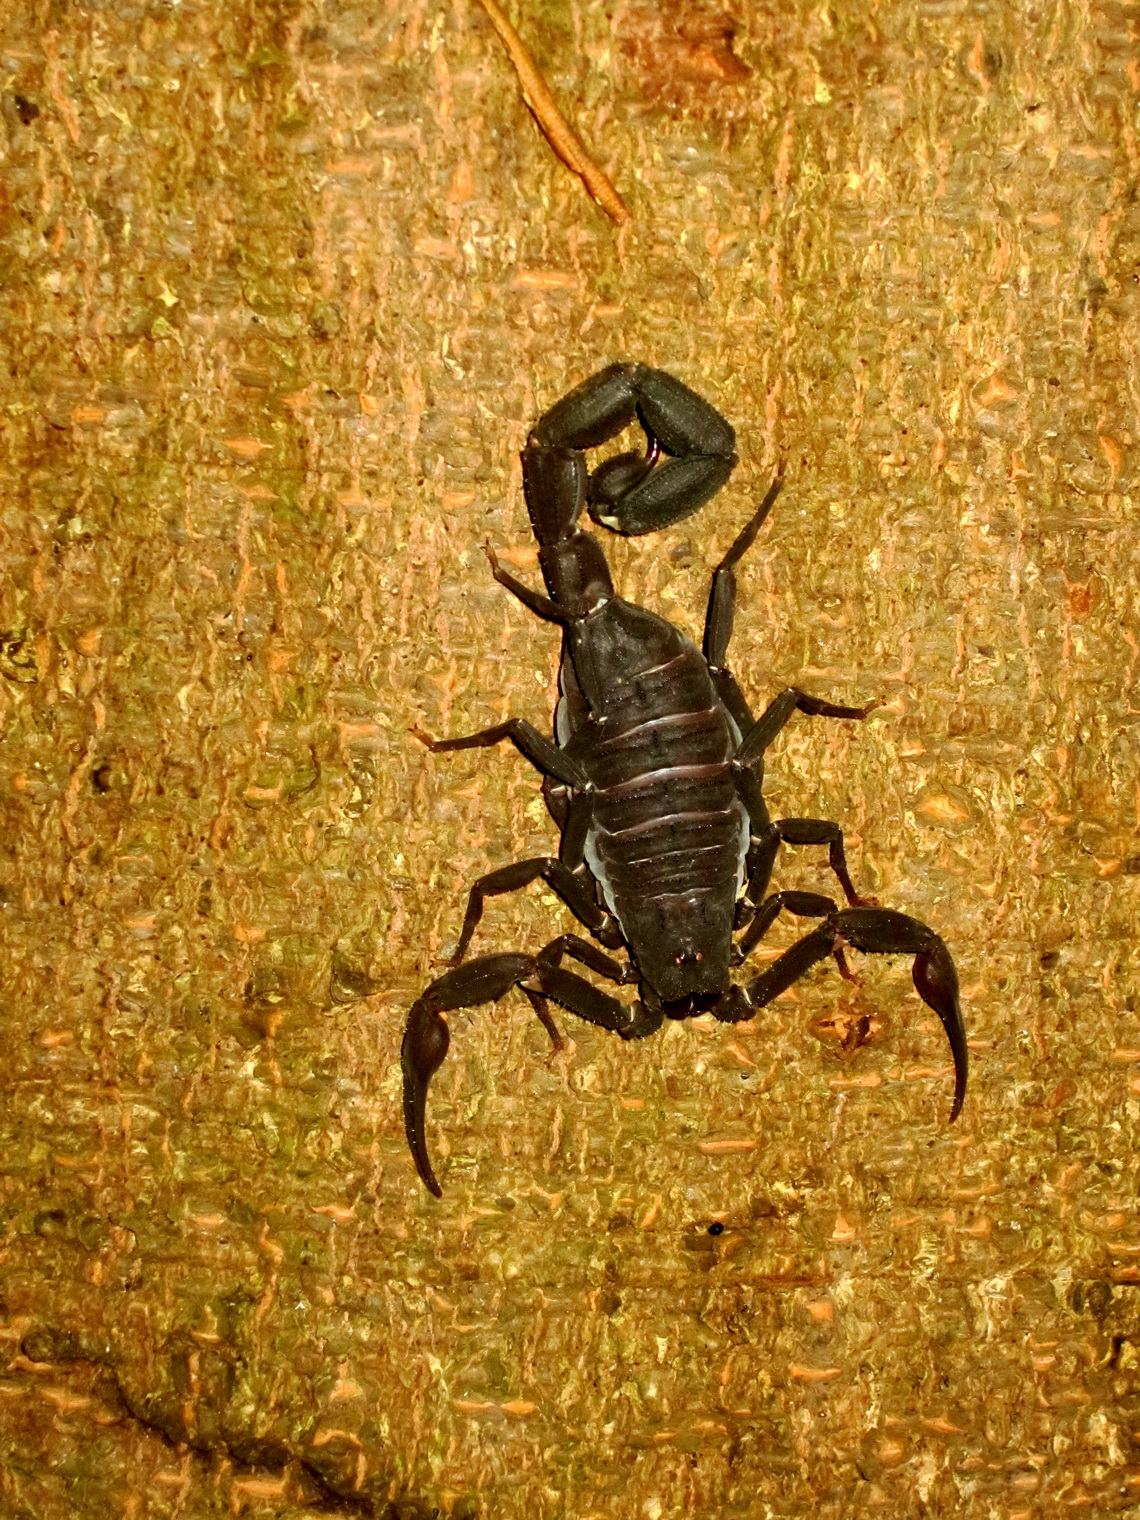 Scorpion of the Amazon